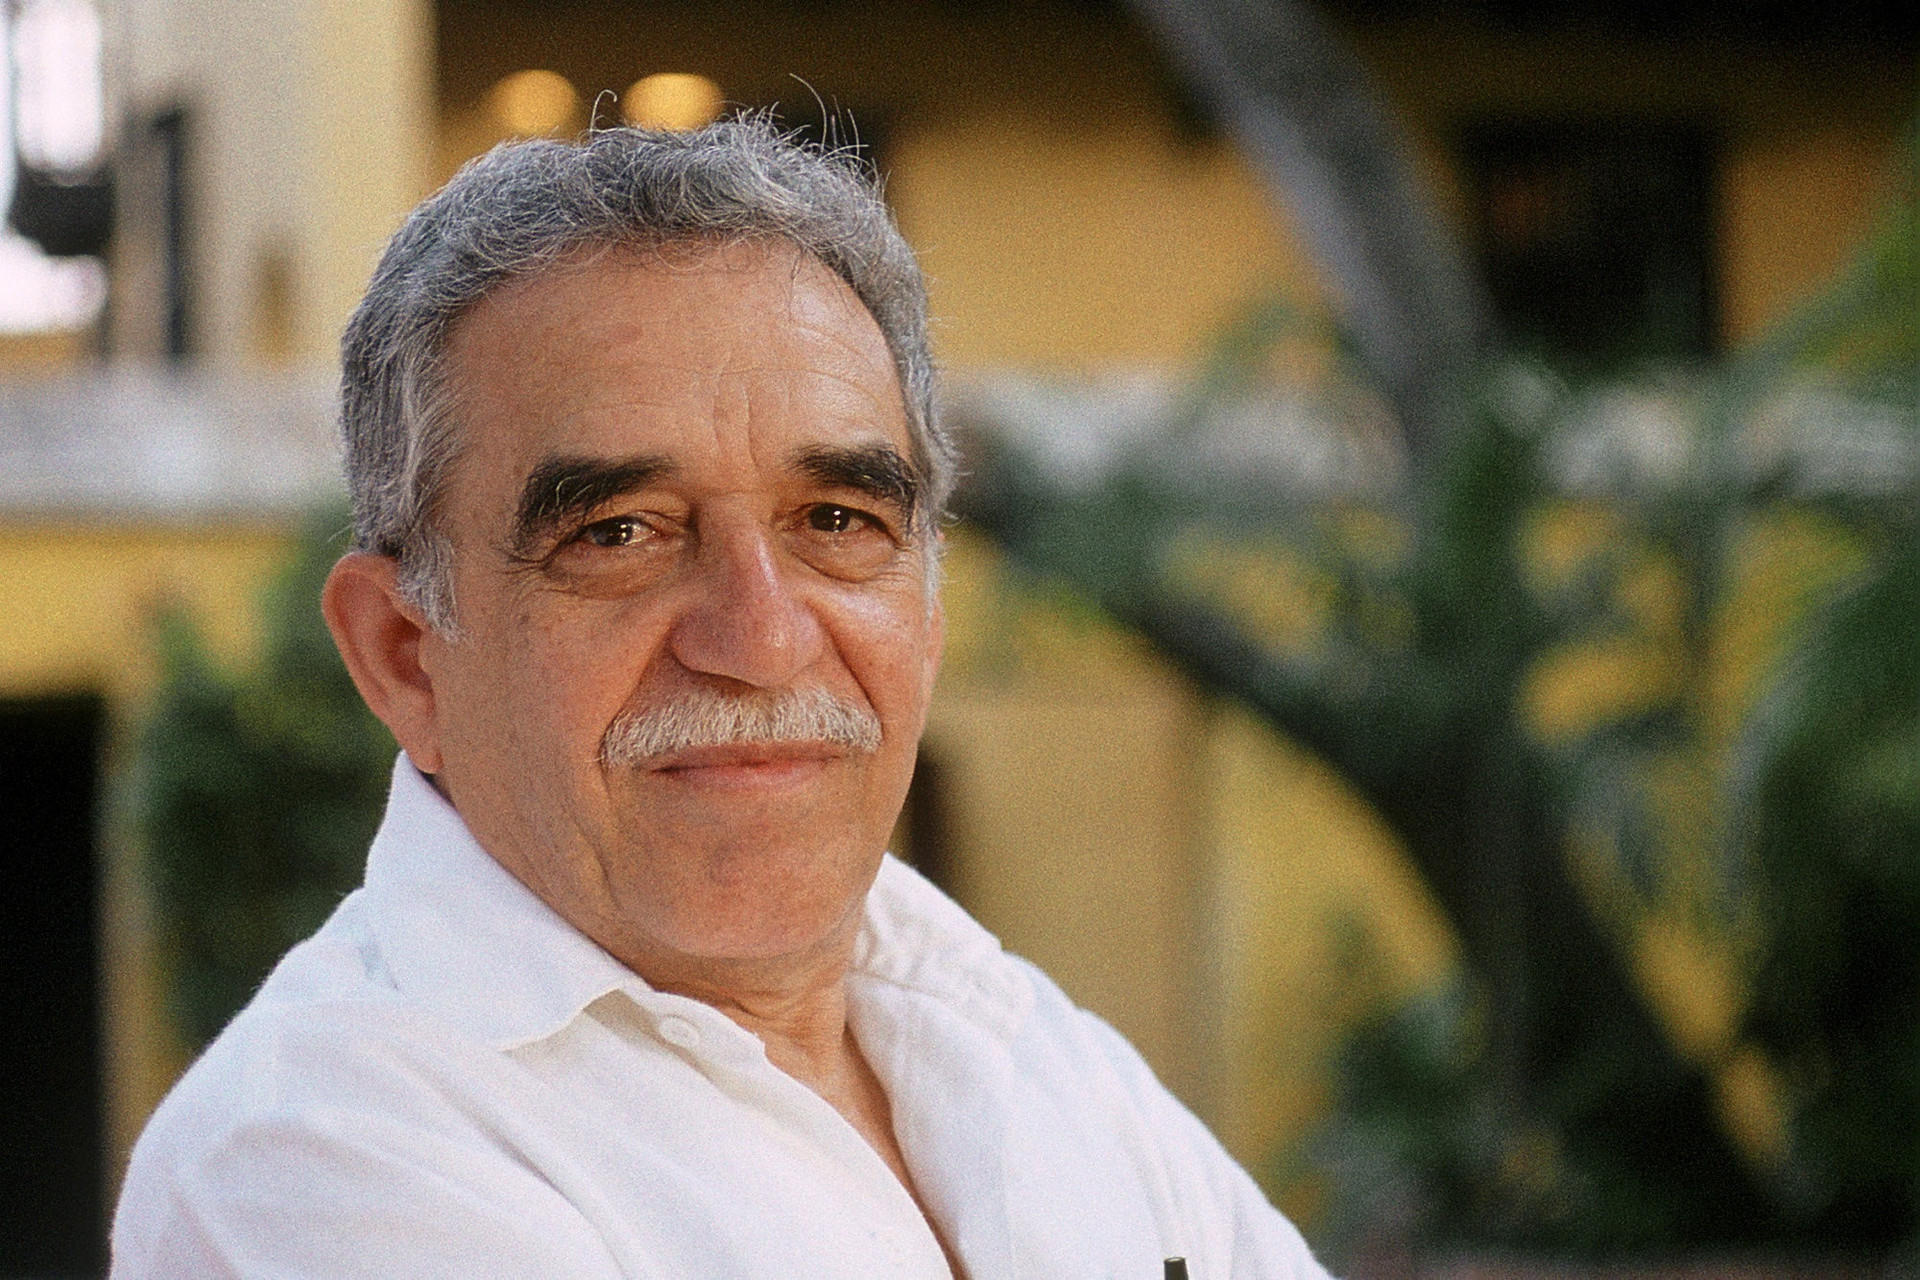 Trăm năm cô đơn cùng Gabriel García Márquez - 5